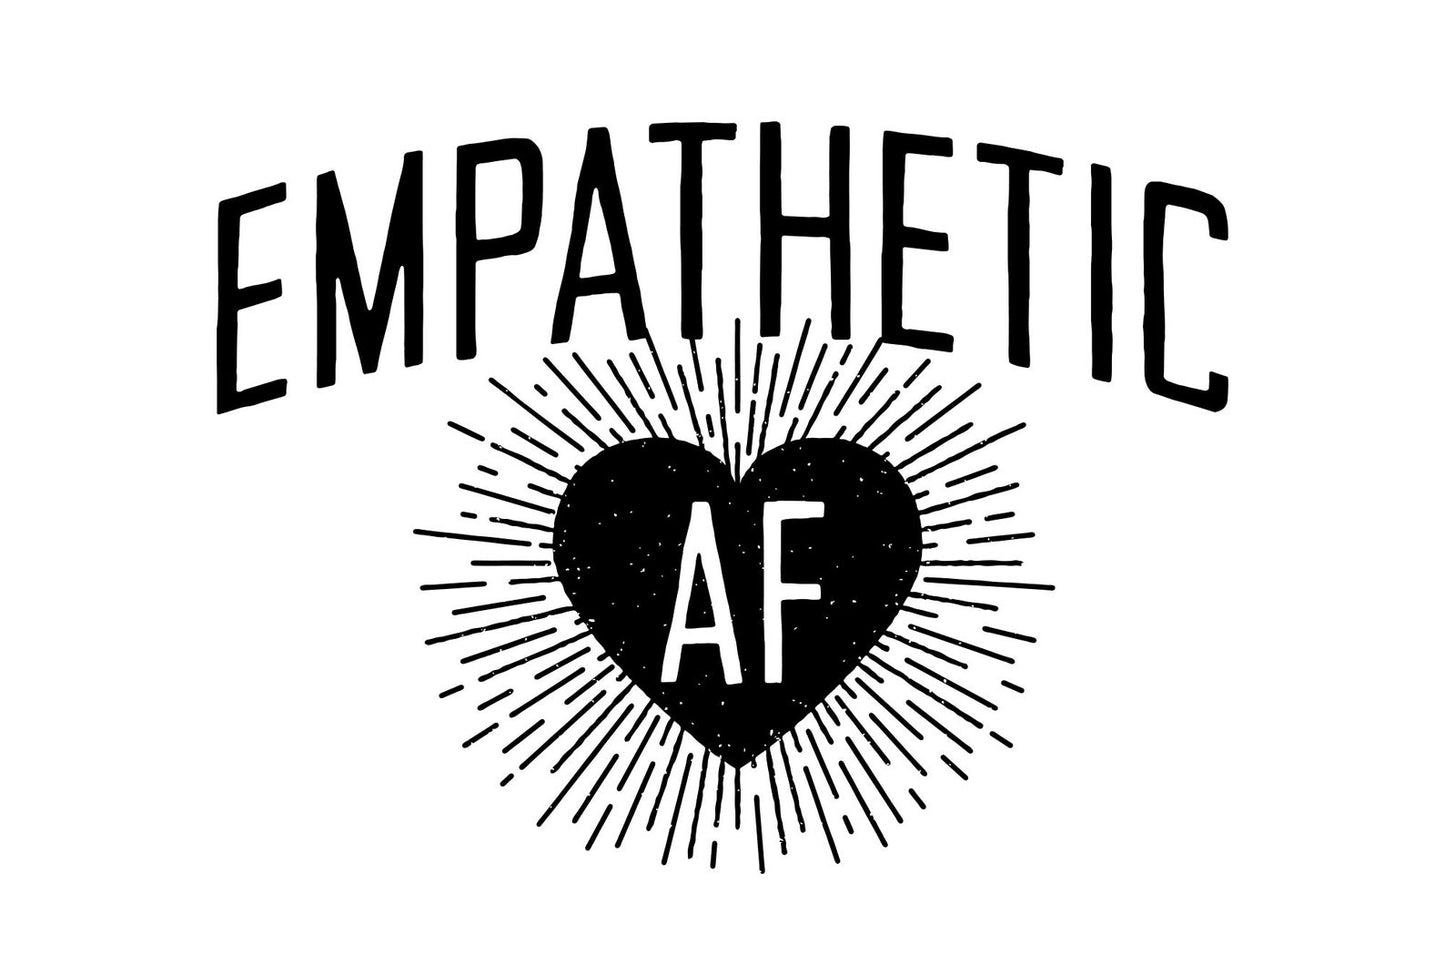 Empathetic AF - Enamel Camp Mug